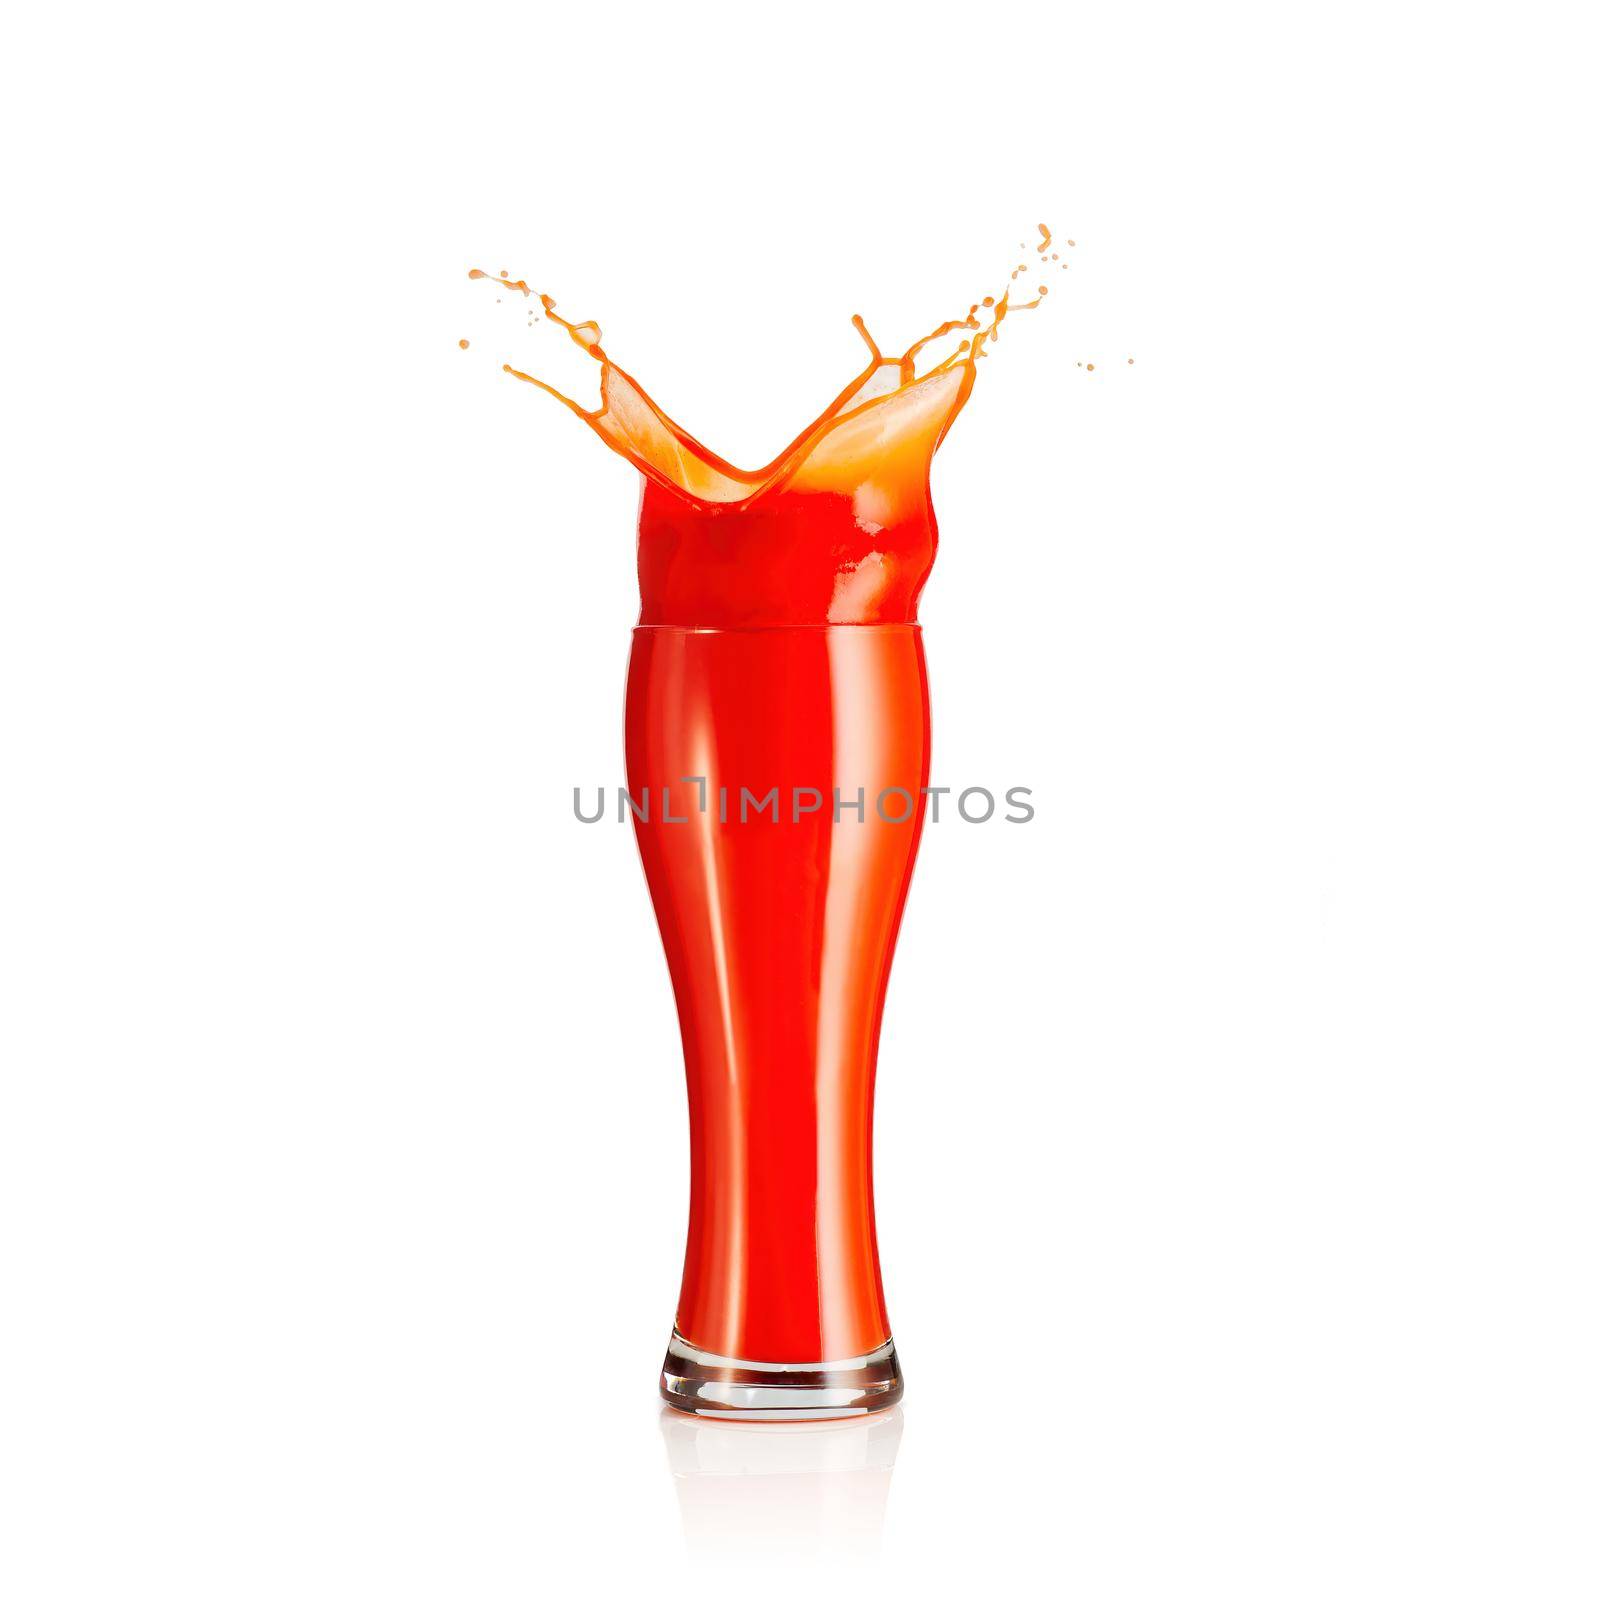 splash of tomato juice isolated on white background. juice in beer glass splashing